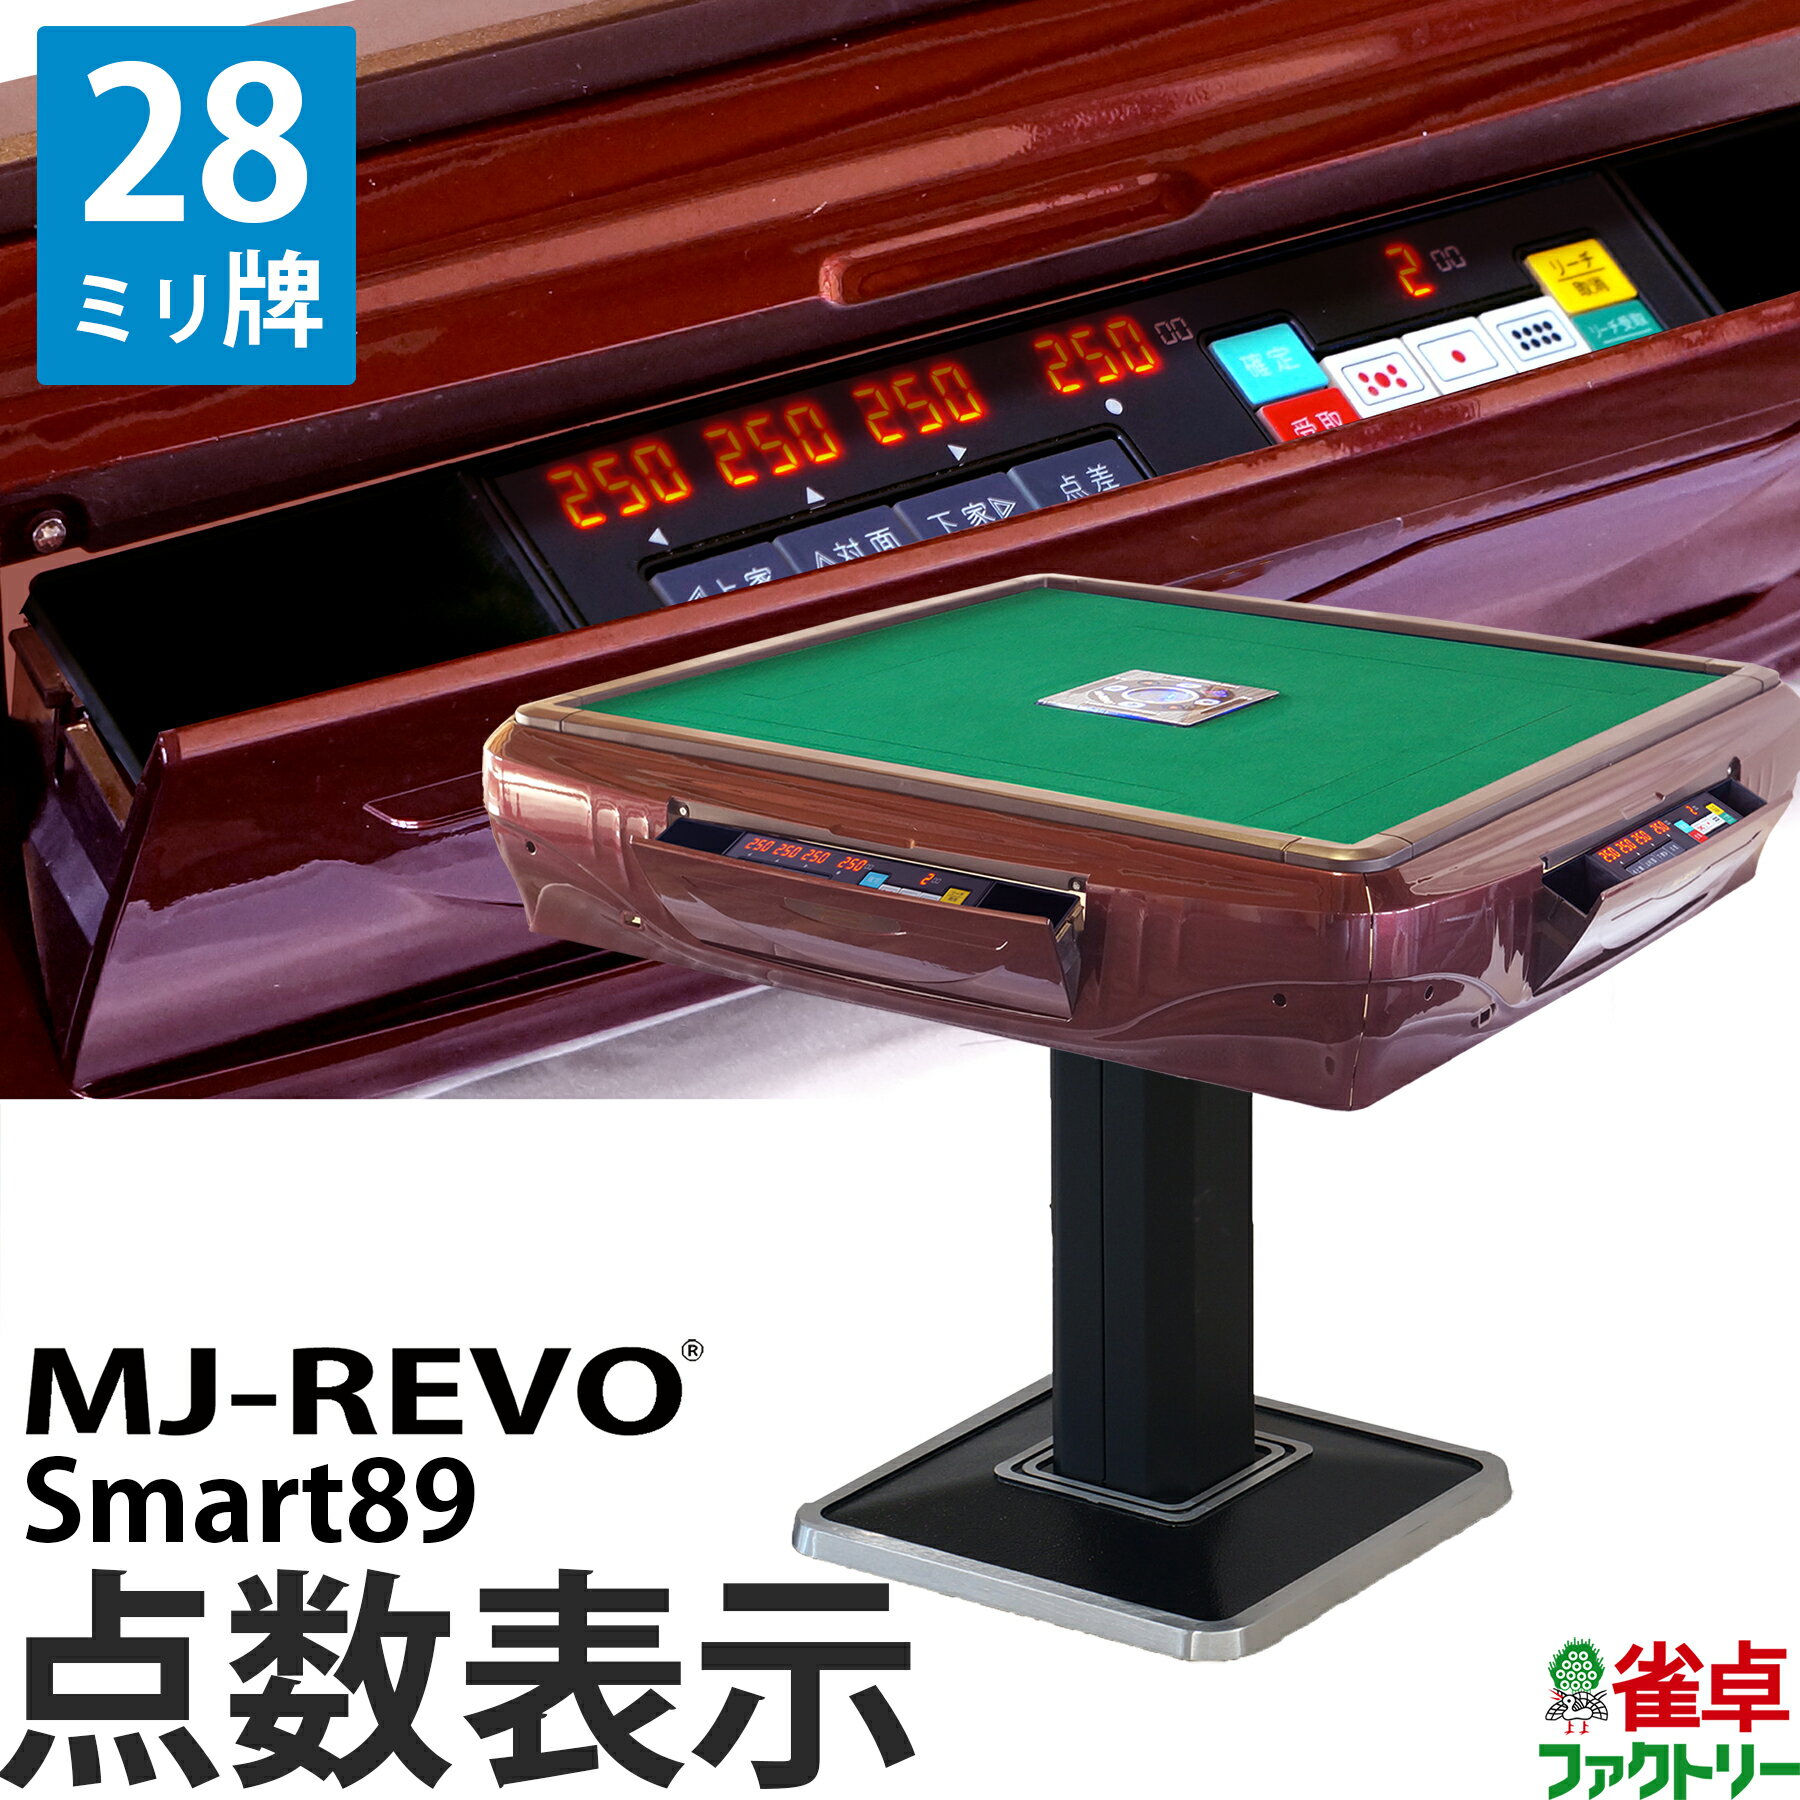 全自動麻雀卓 点数表示 MJ-REVO Smart89 28ミリ牌 3年保証 静音タイプ スマート 日本仕様 雀卓 麻雀牌 レッド